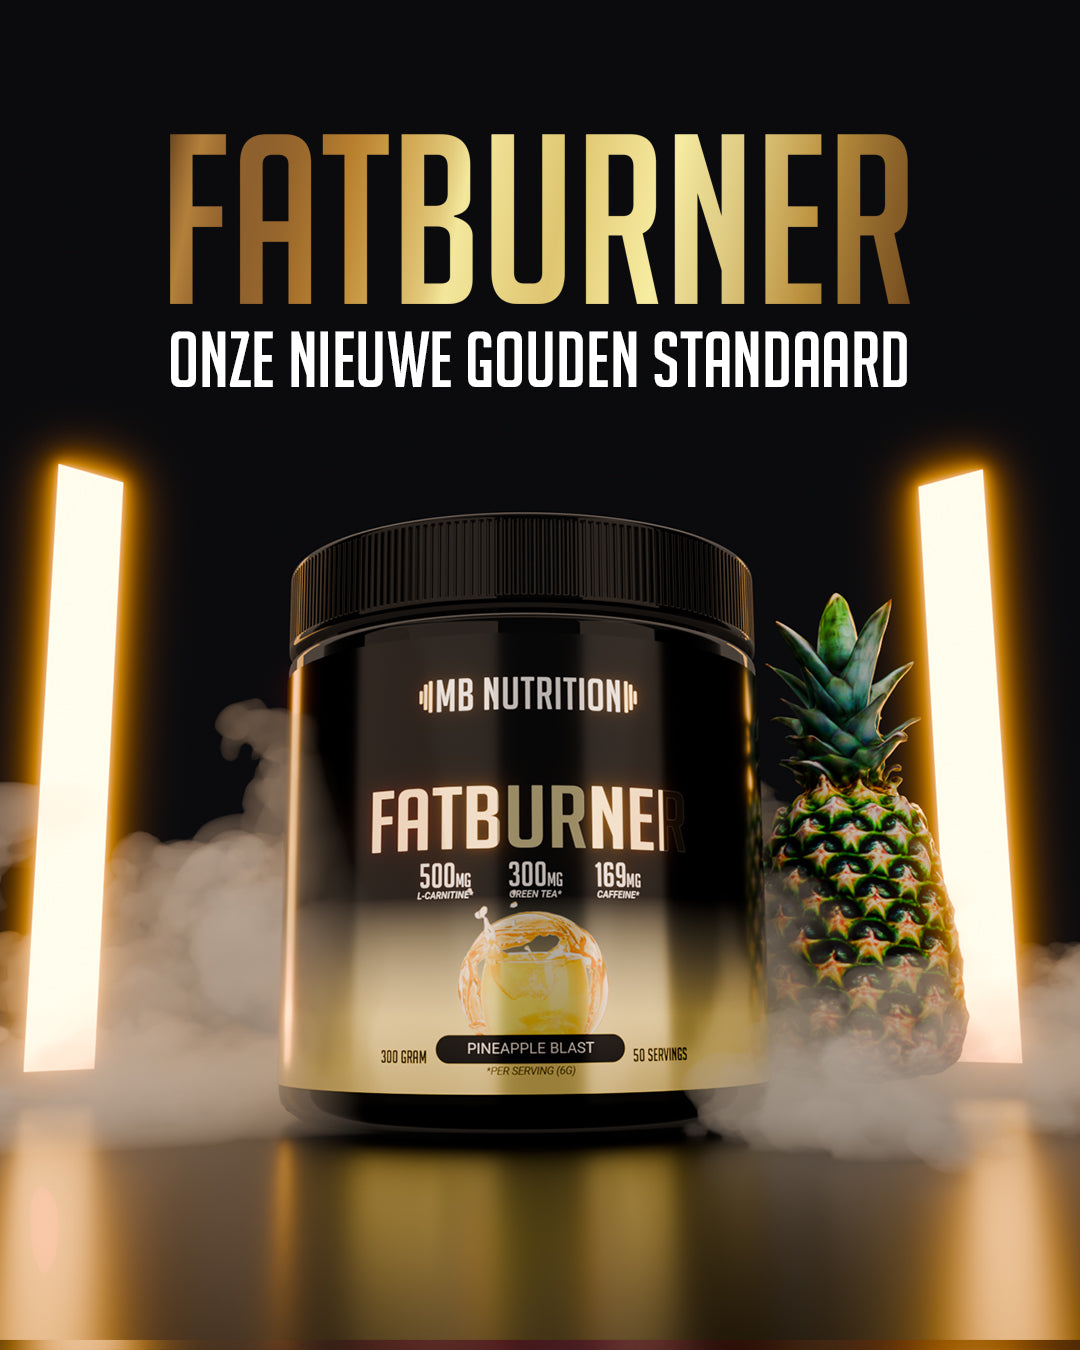 Fatburner Mb nutrition vetverbrander 